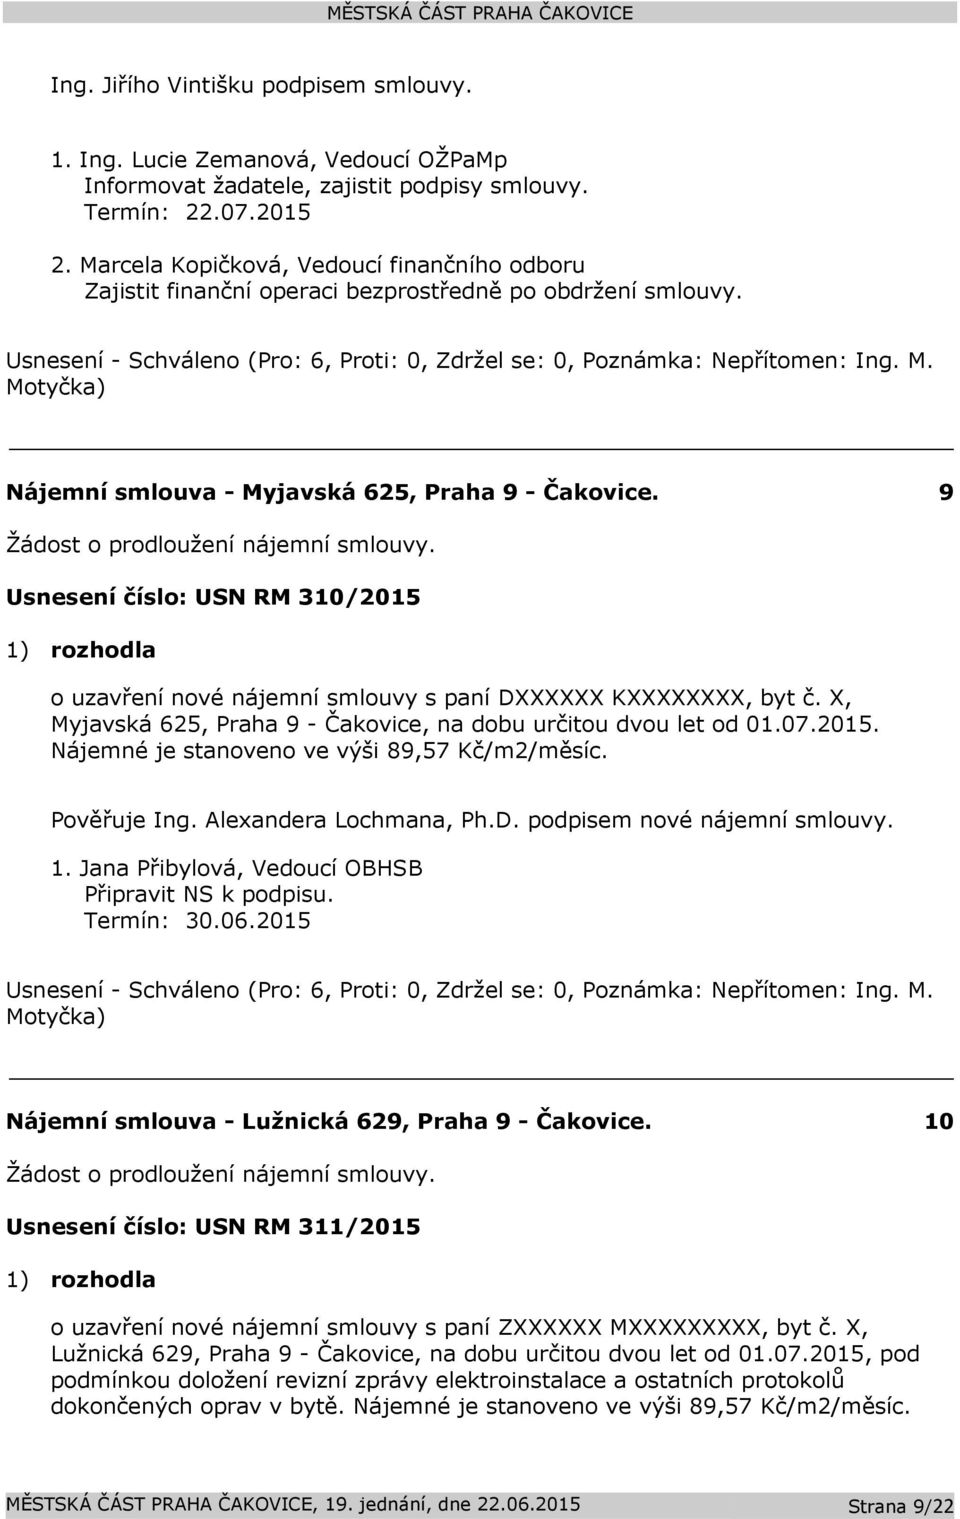 Usnesení číslo: USN RM 310/2015 1) rozhodla o uzavření nové nájemní smlouvy s paní DXXXXXX KXXXXXXXX, byt č. X, Myjavská 625, Praha 9 - Čakovice, na dobu určitou dvou let od 01.07.2015. Nájemné je stanoveno ve výši 89,57 Kč/m2/měsíc.